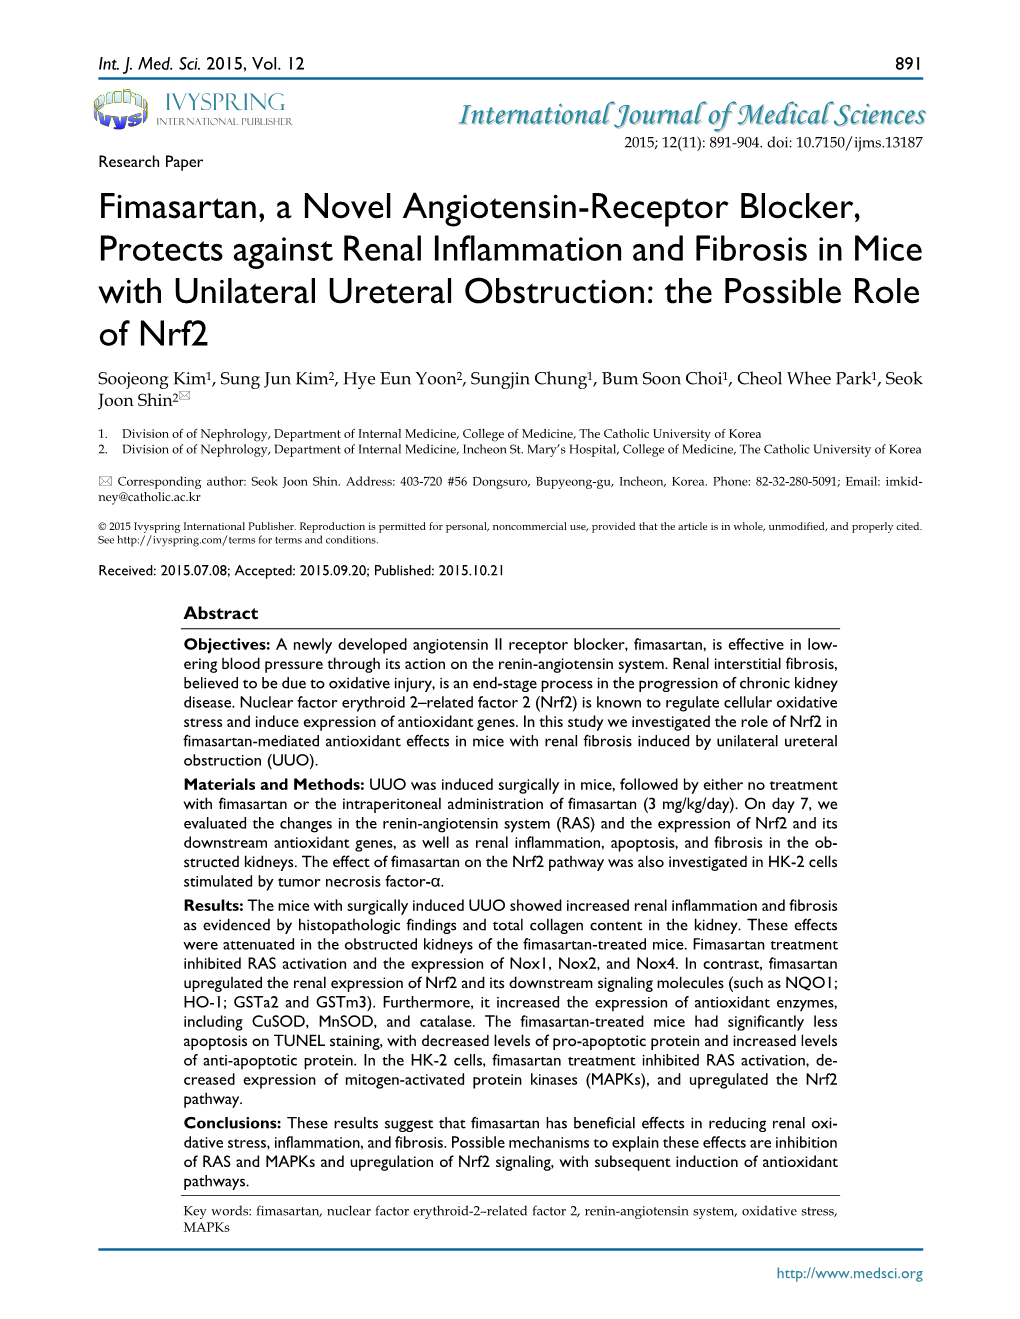 Fimasartan, a Novel Angiotensin-Receptor Blocker